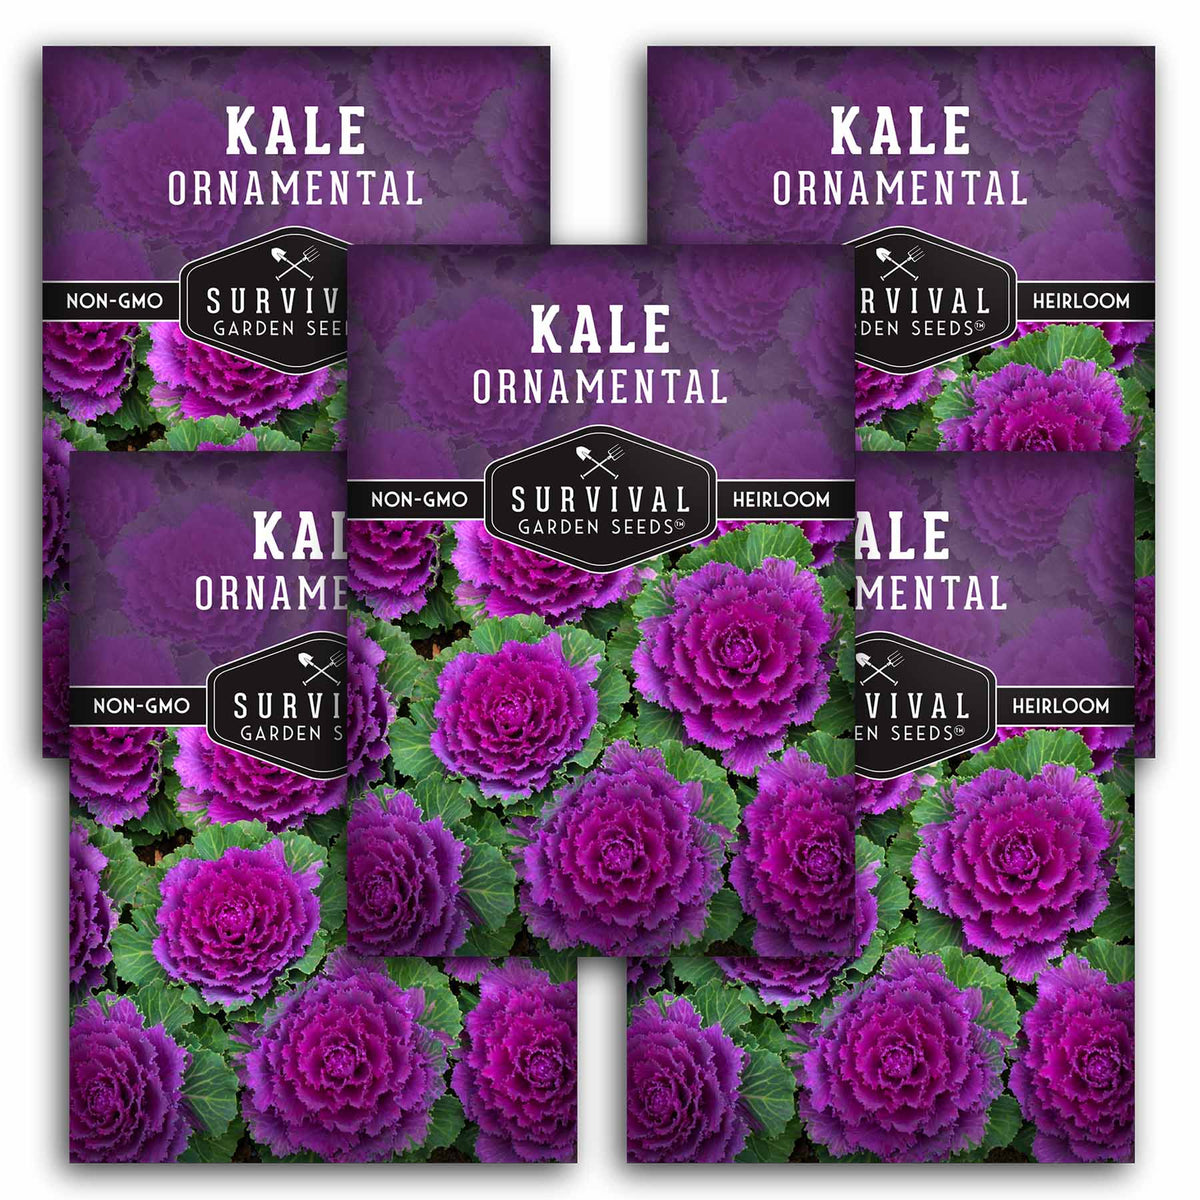 5 packet of Ornamental Kale seeds